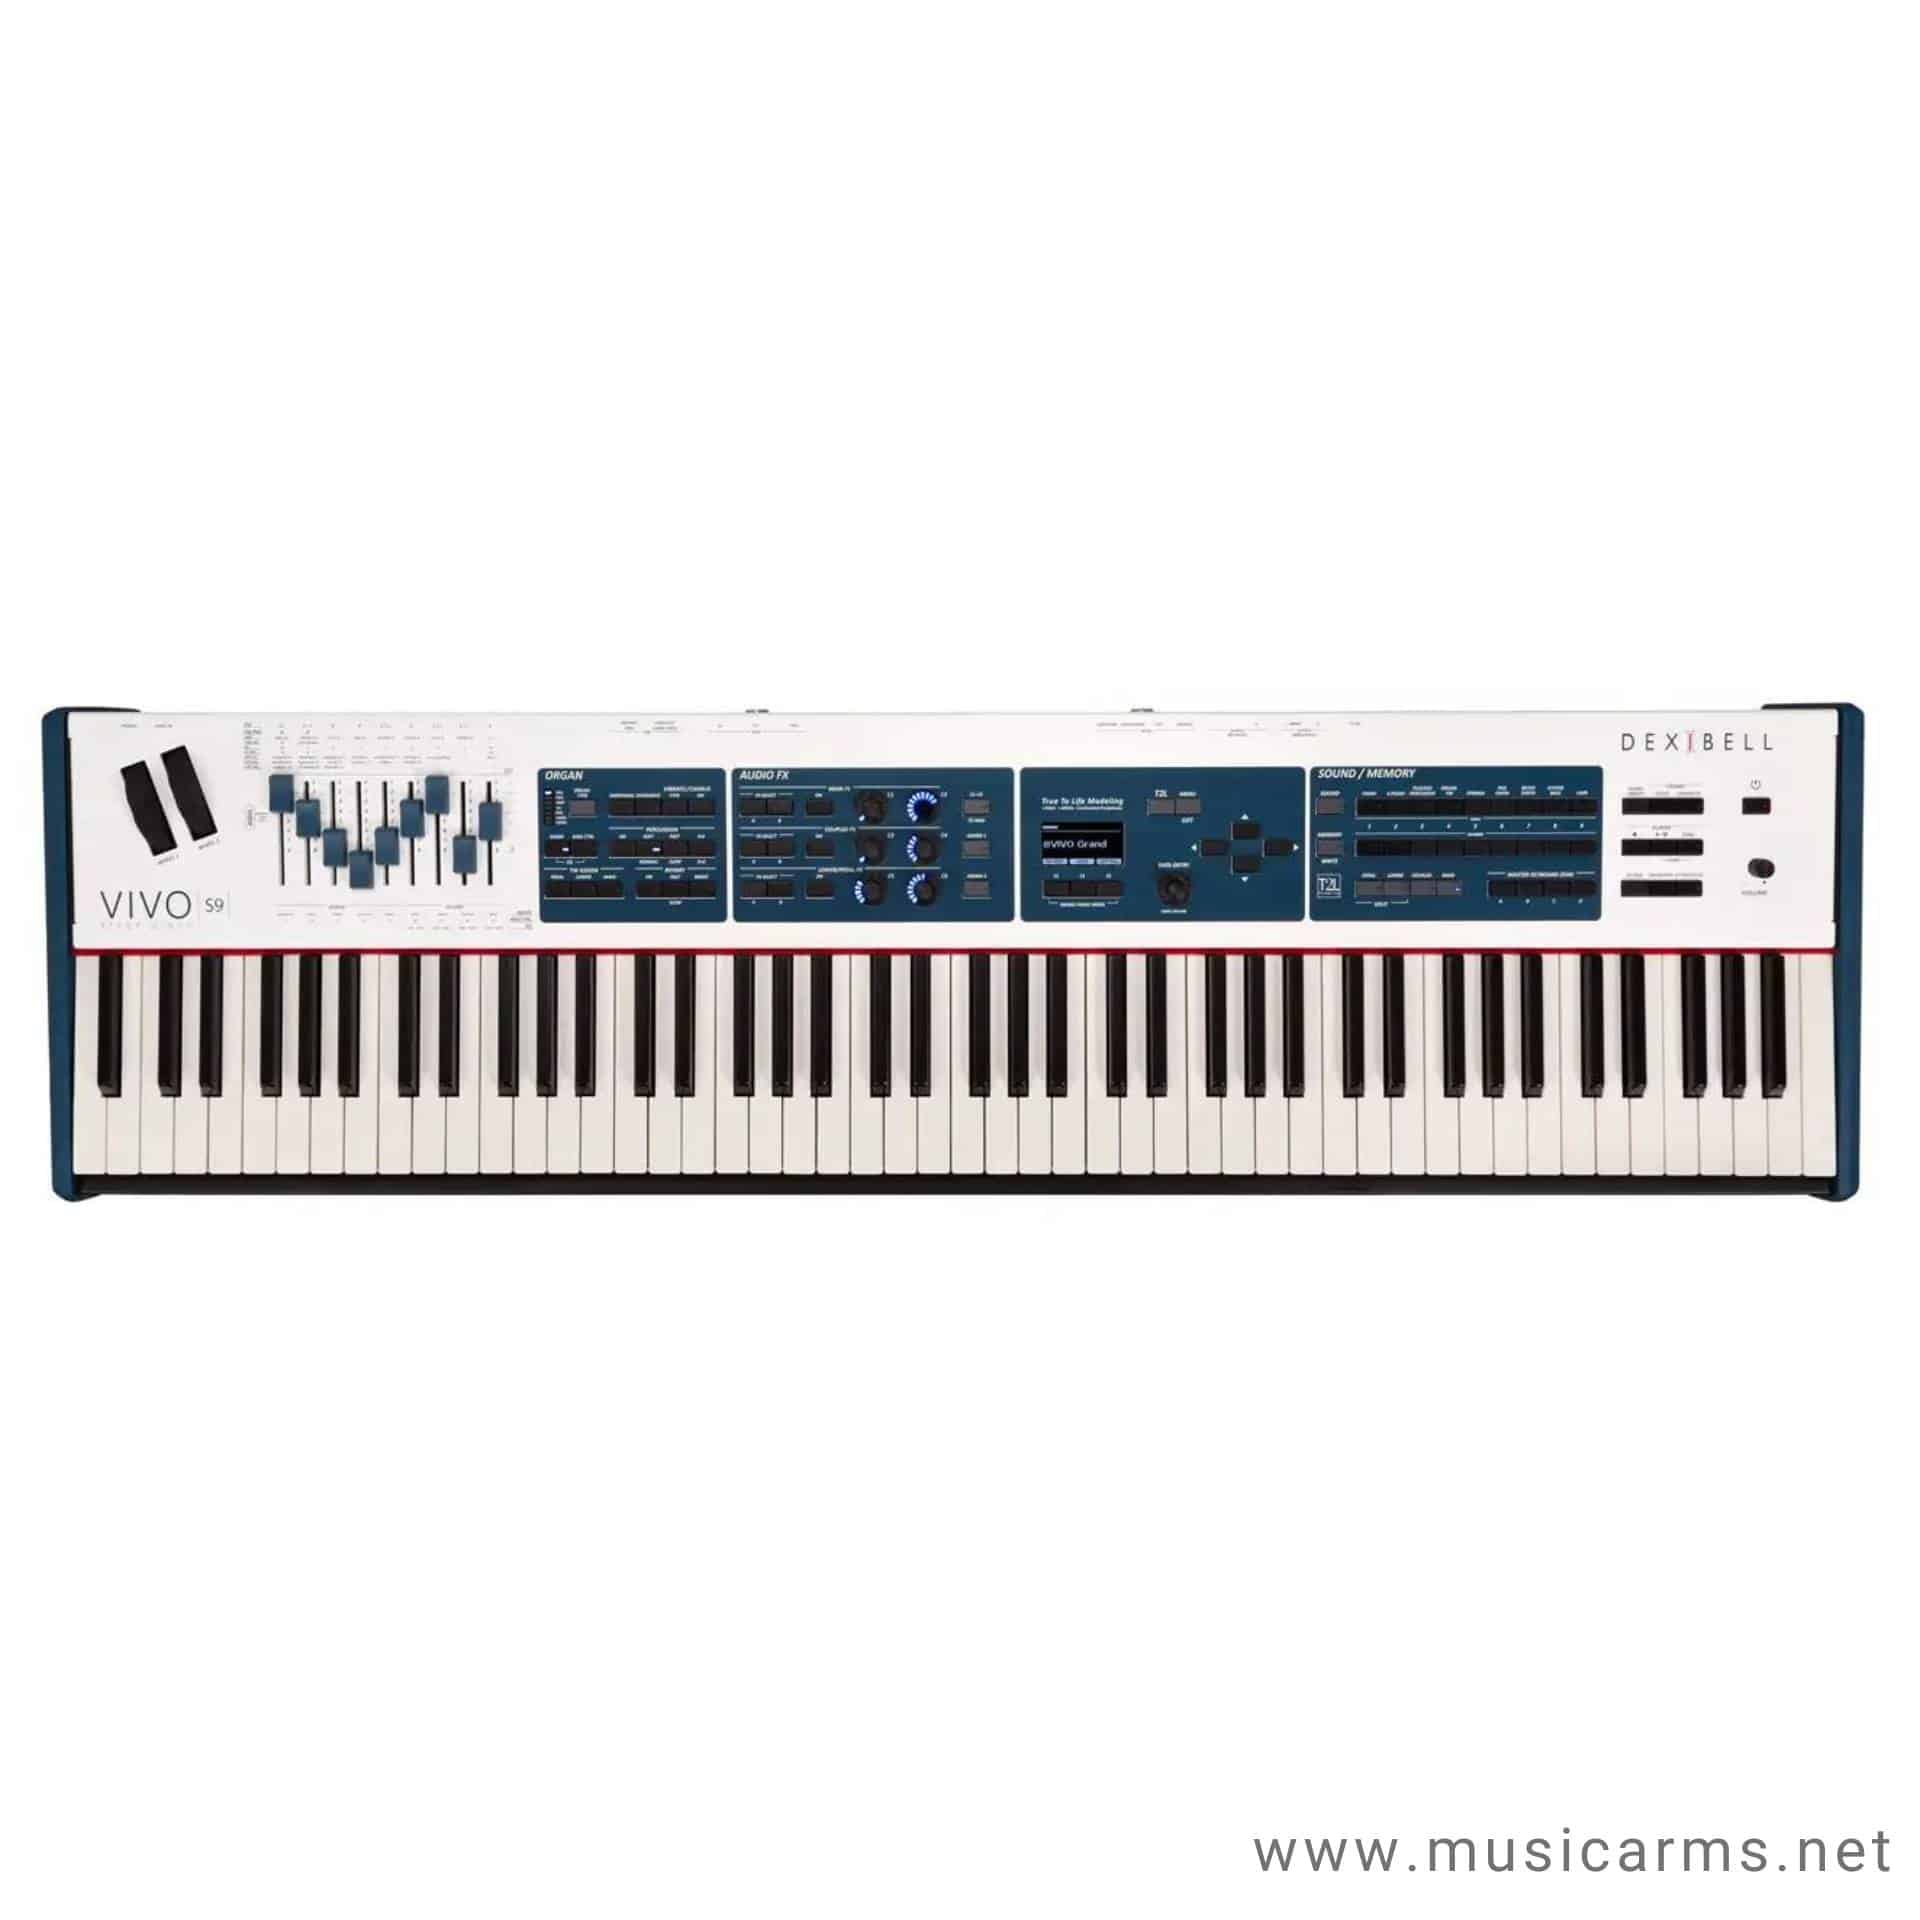 Dexibell VIVO S9 Digital piano-02